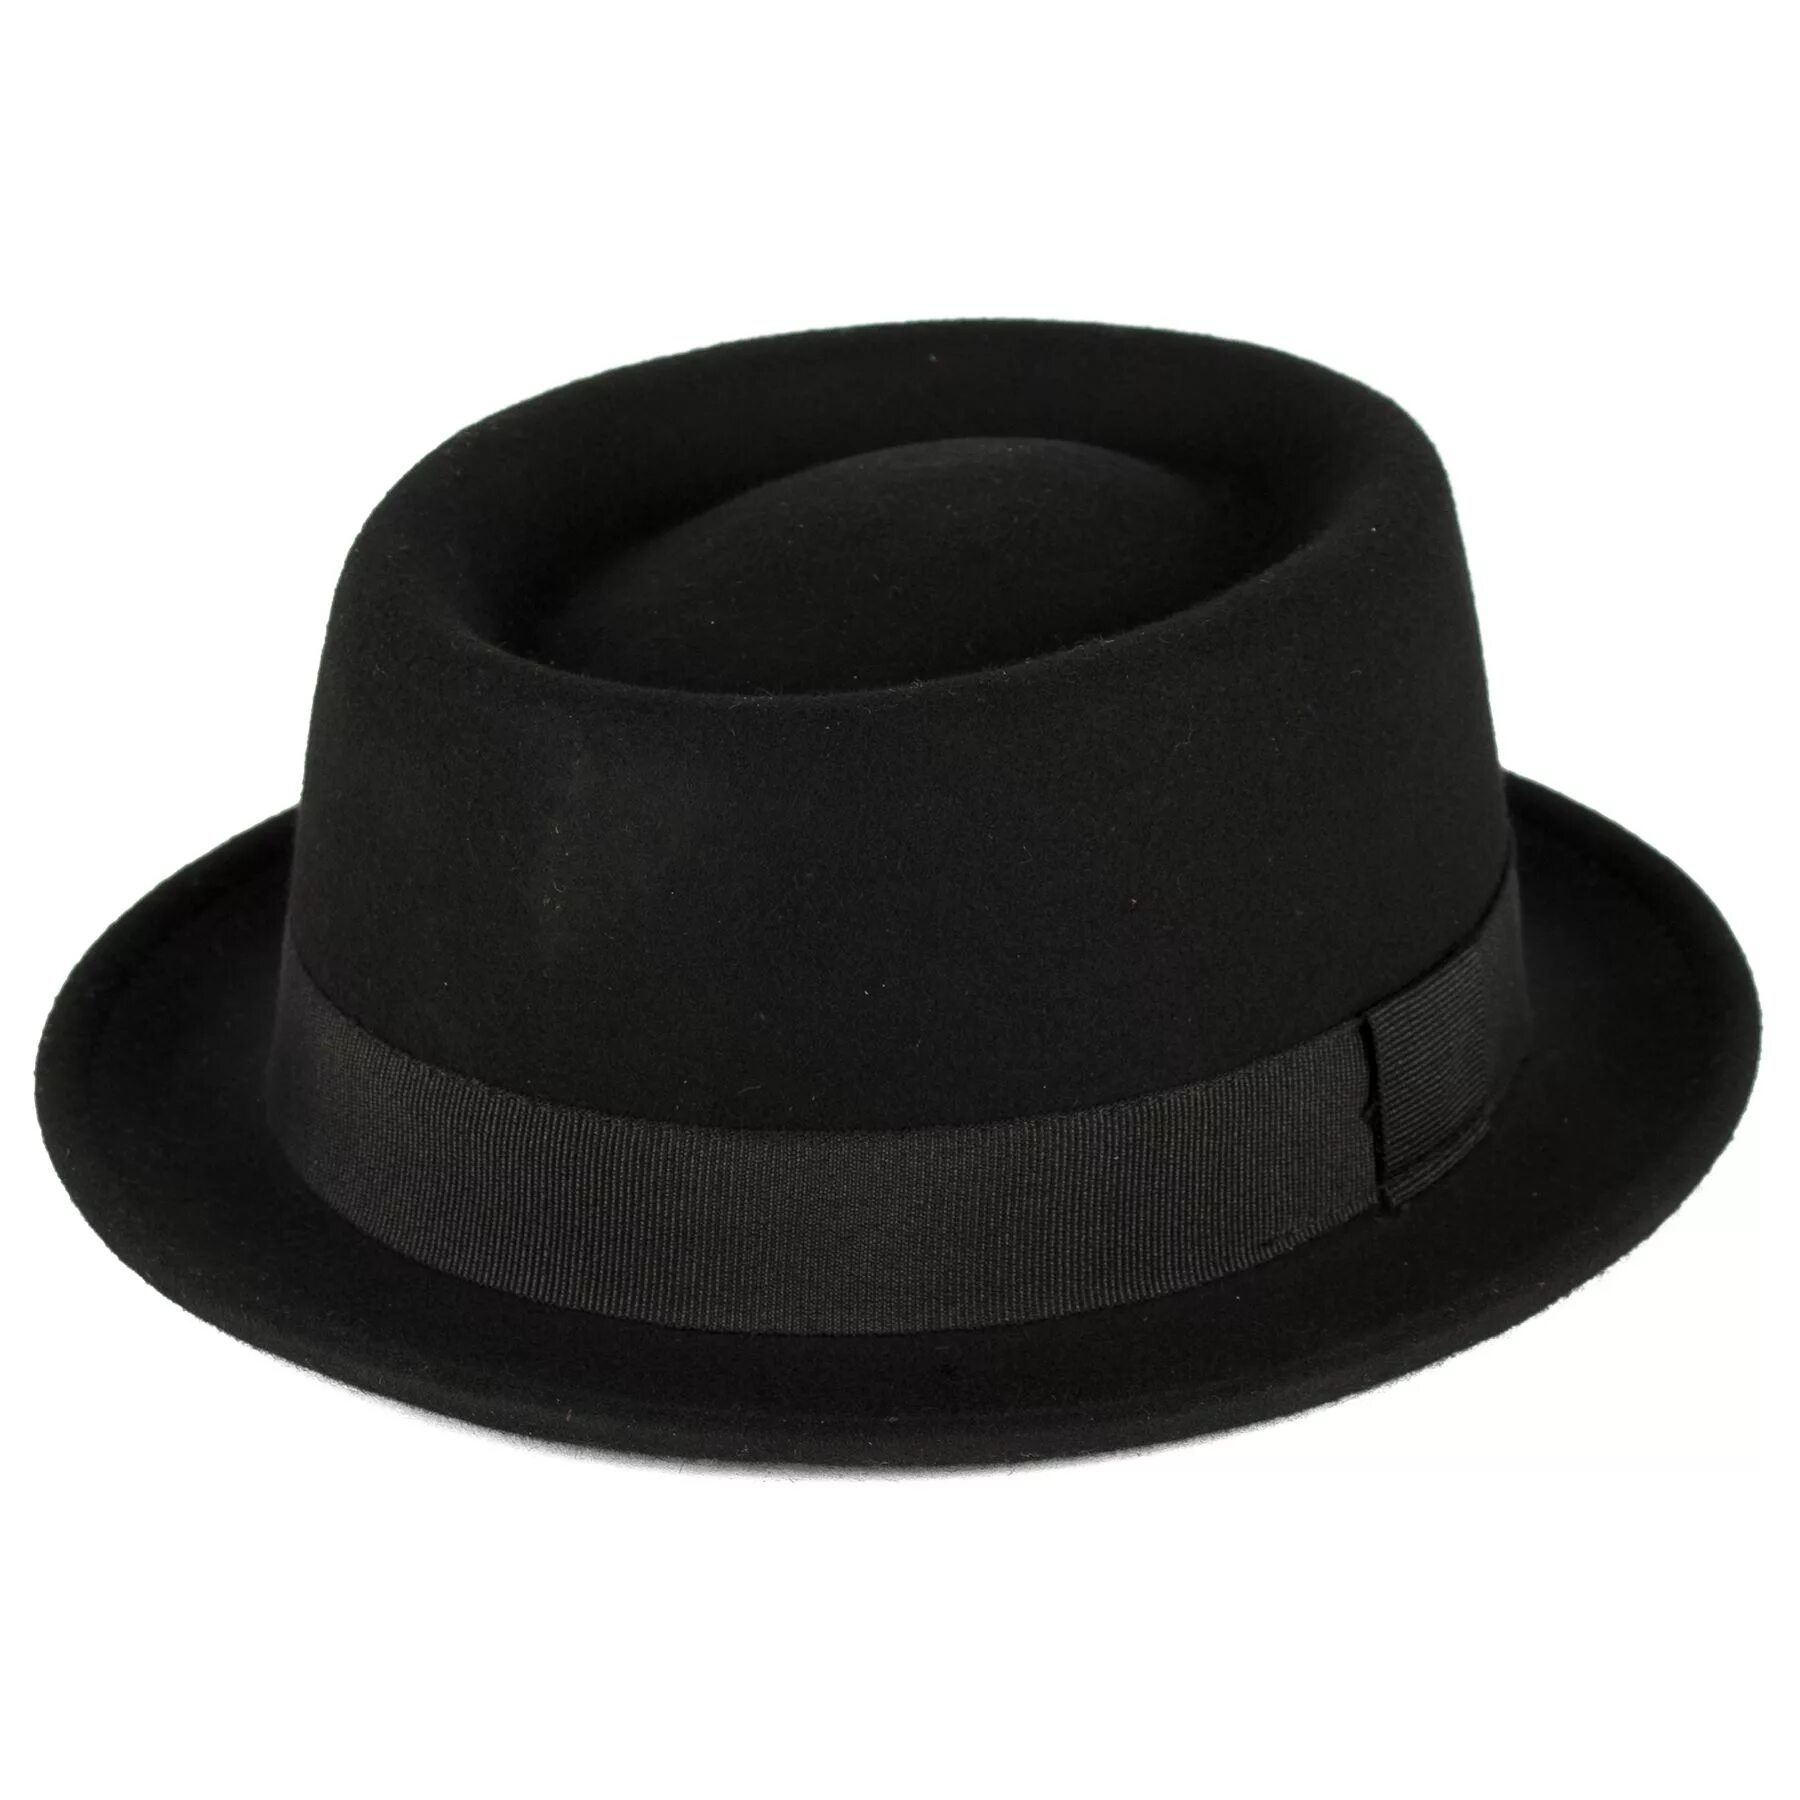 Шляпа Hathat порк-Пай. Кангол шляпы порк Пай. Шляпа порк-Пай мужская кожаная. Порк Пай шляпа мужская светлая.